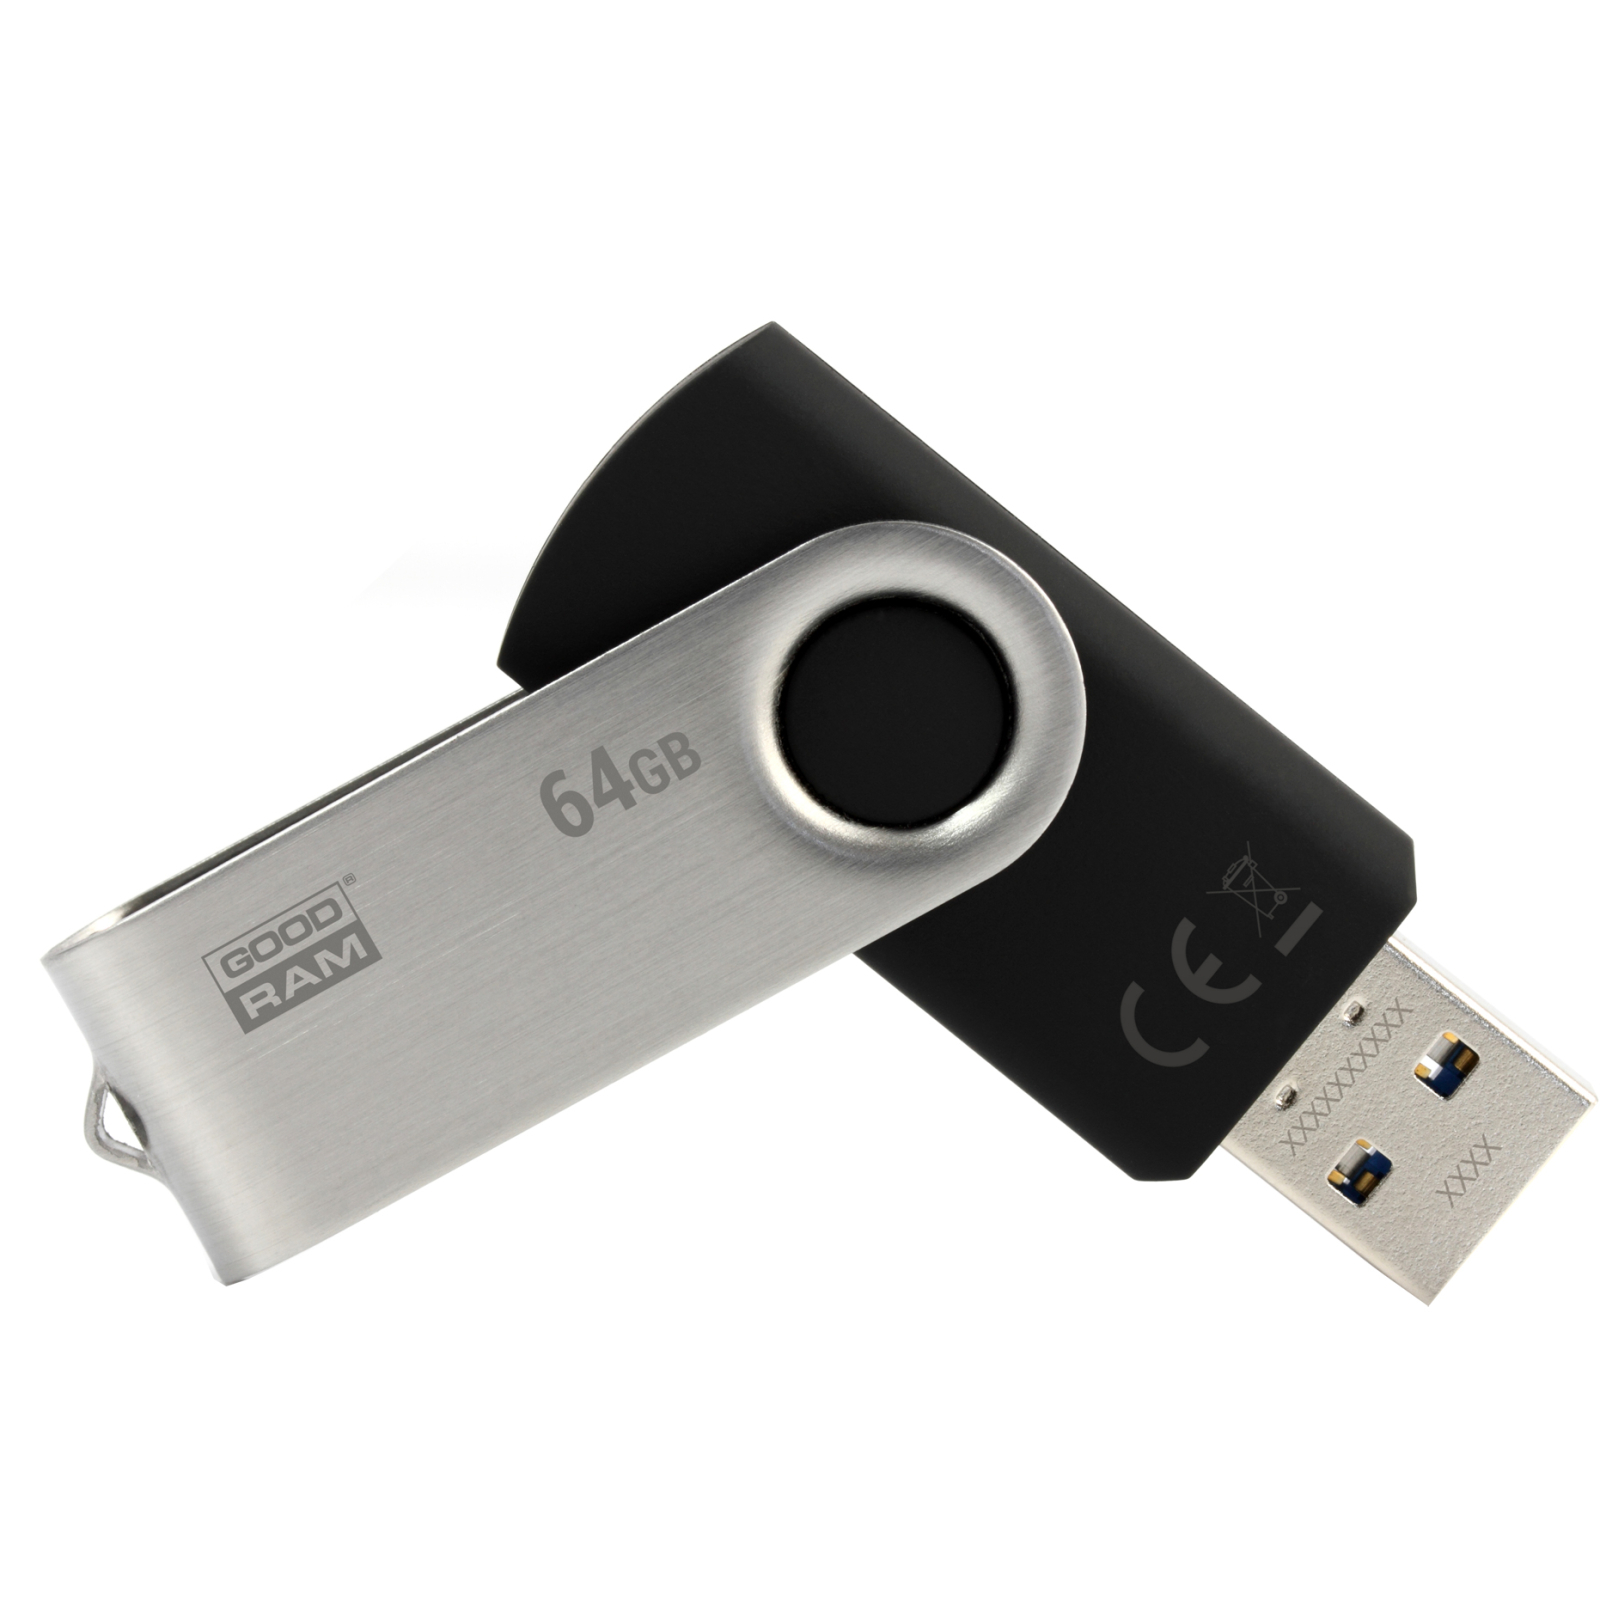 USB флеш накопитель Goodram 128GB UTS2 Twister Black USB 2.0 (UTS2-1280K0R11)